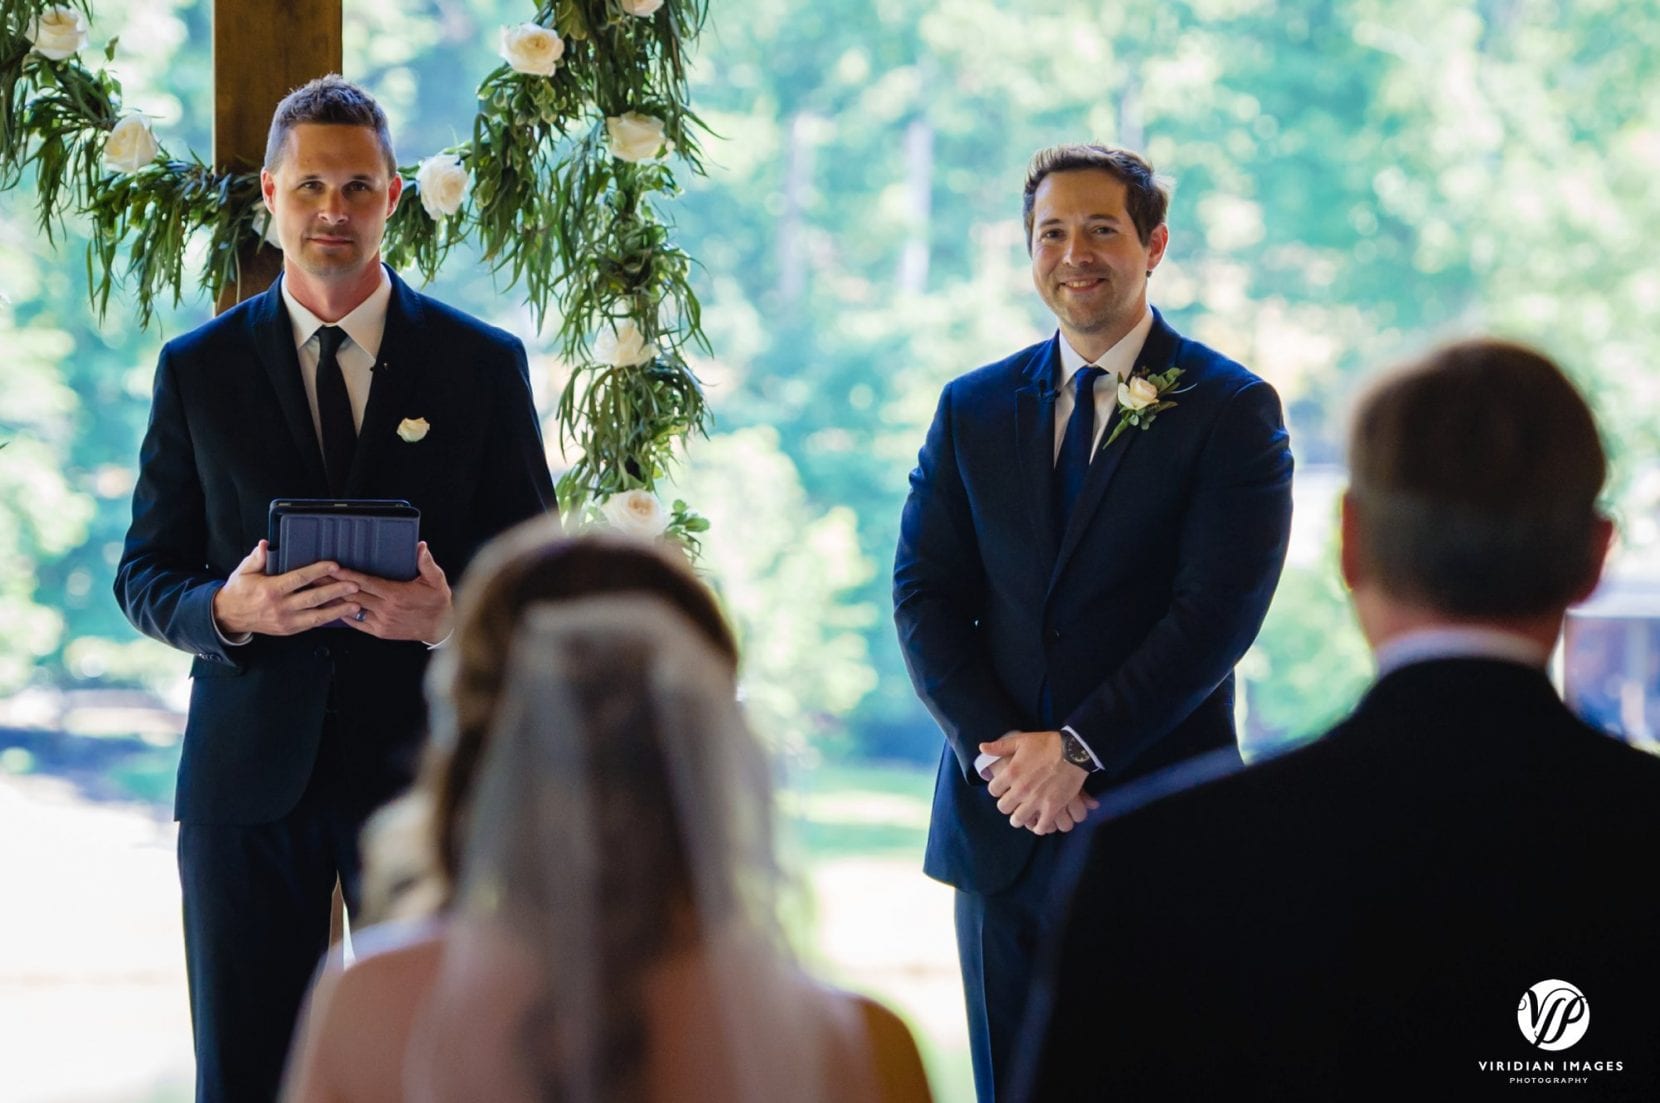 groom sees bride down aisle